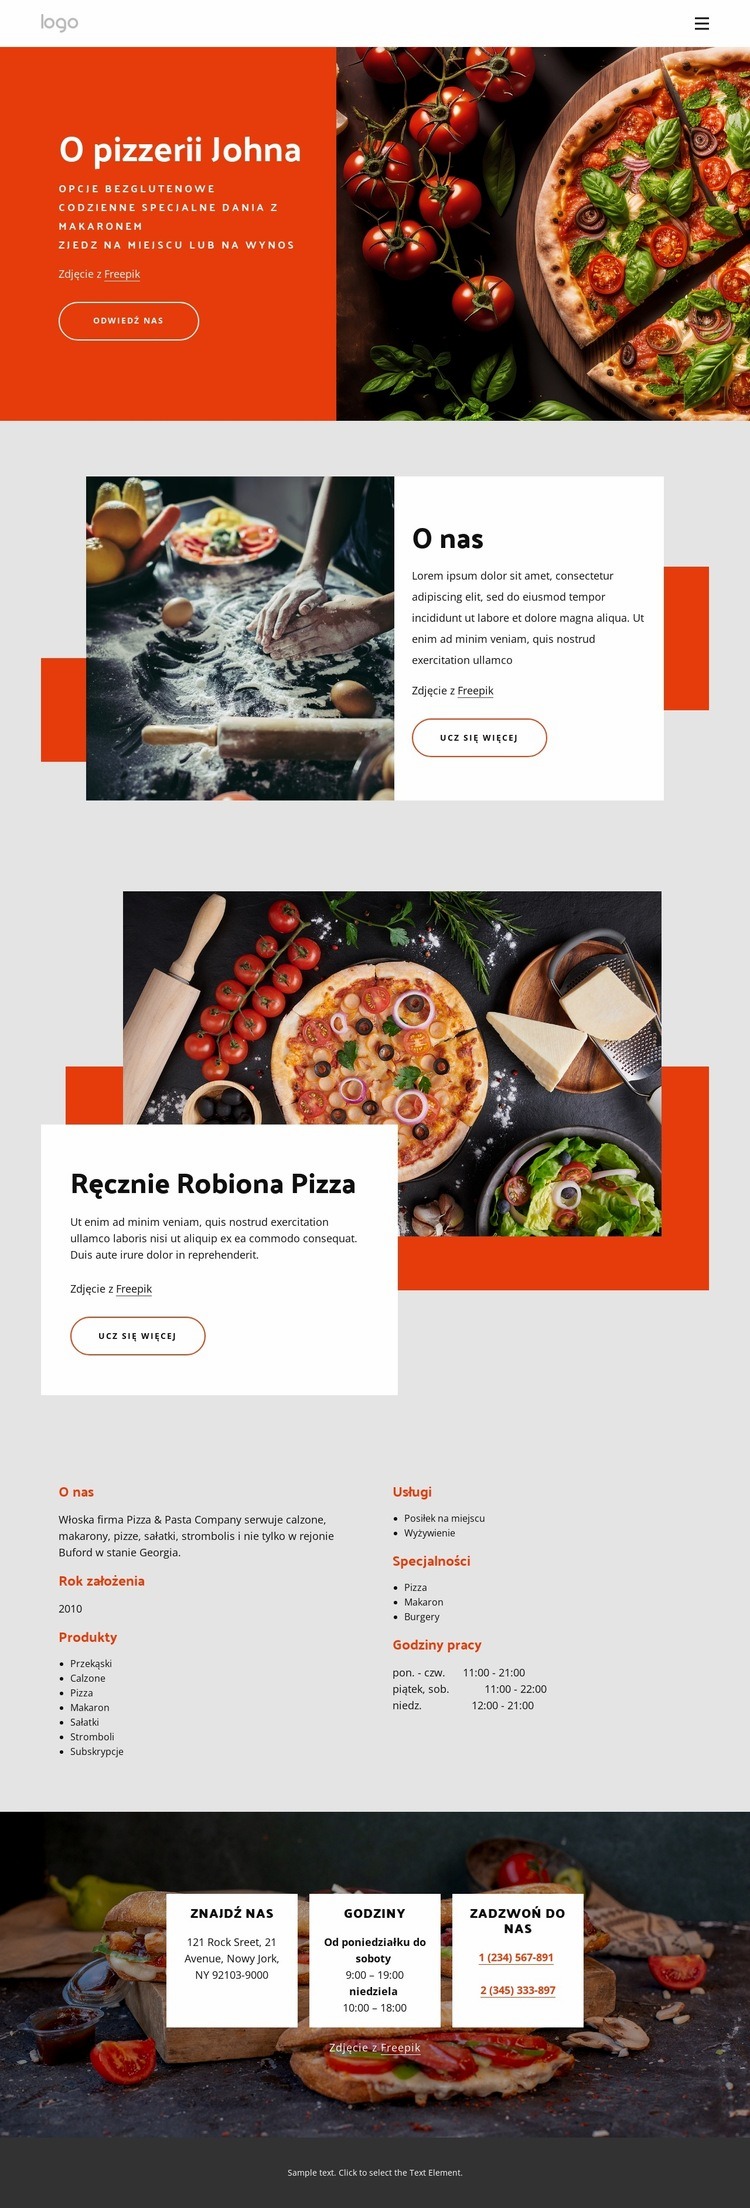 O naszej pizzerii Projekt strony internetowej